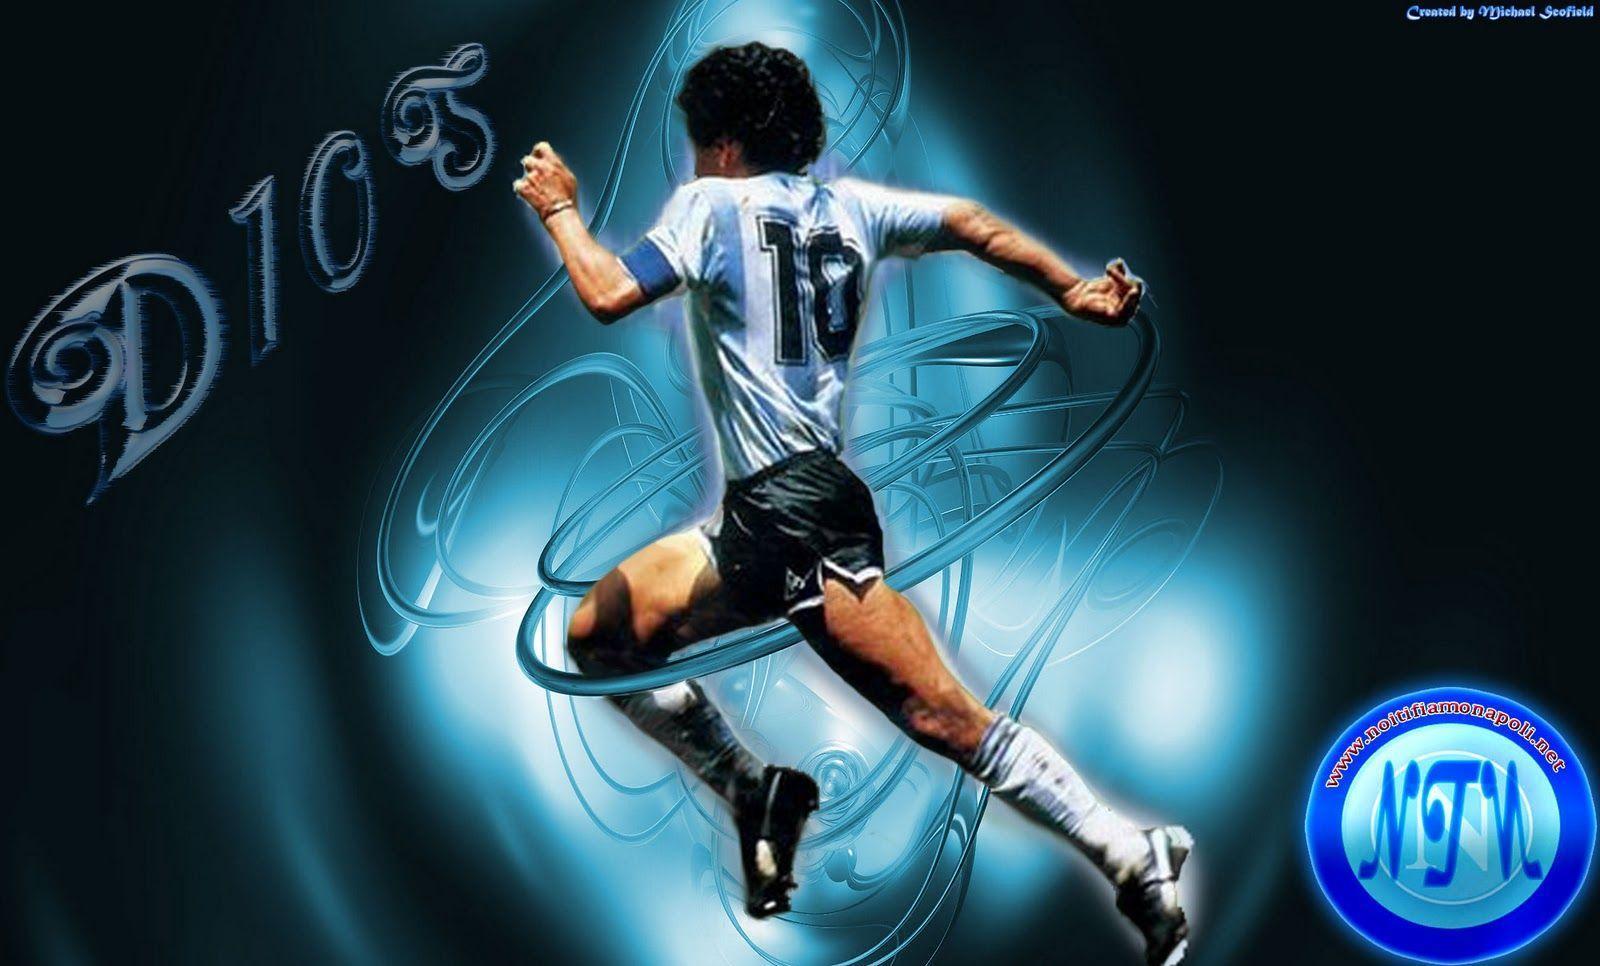 1600 x 966 · jpeg - Maradona Wallpapers - Wallpaper Cave